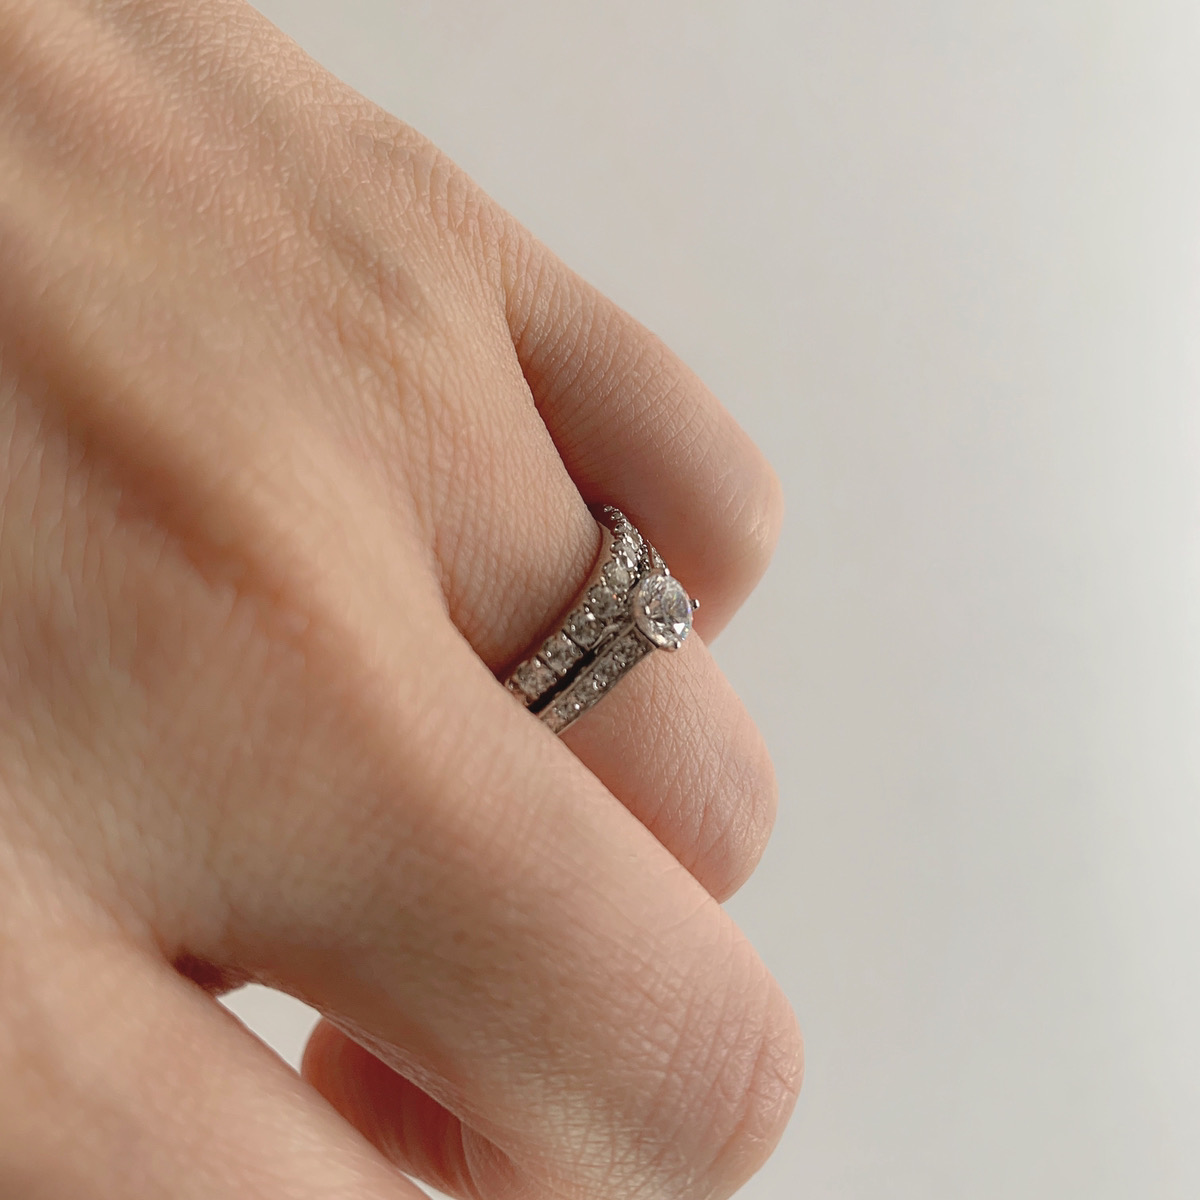 婚約指輪 Ray 0.30ct ダイヤモンド プラチナ(Pt950) エタニティリング 